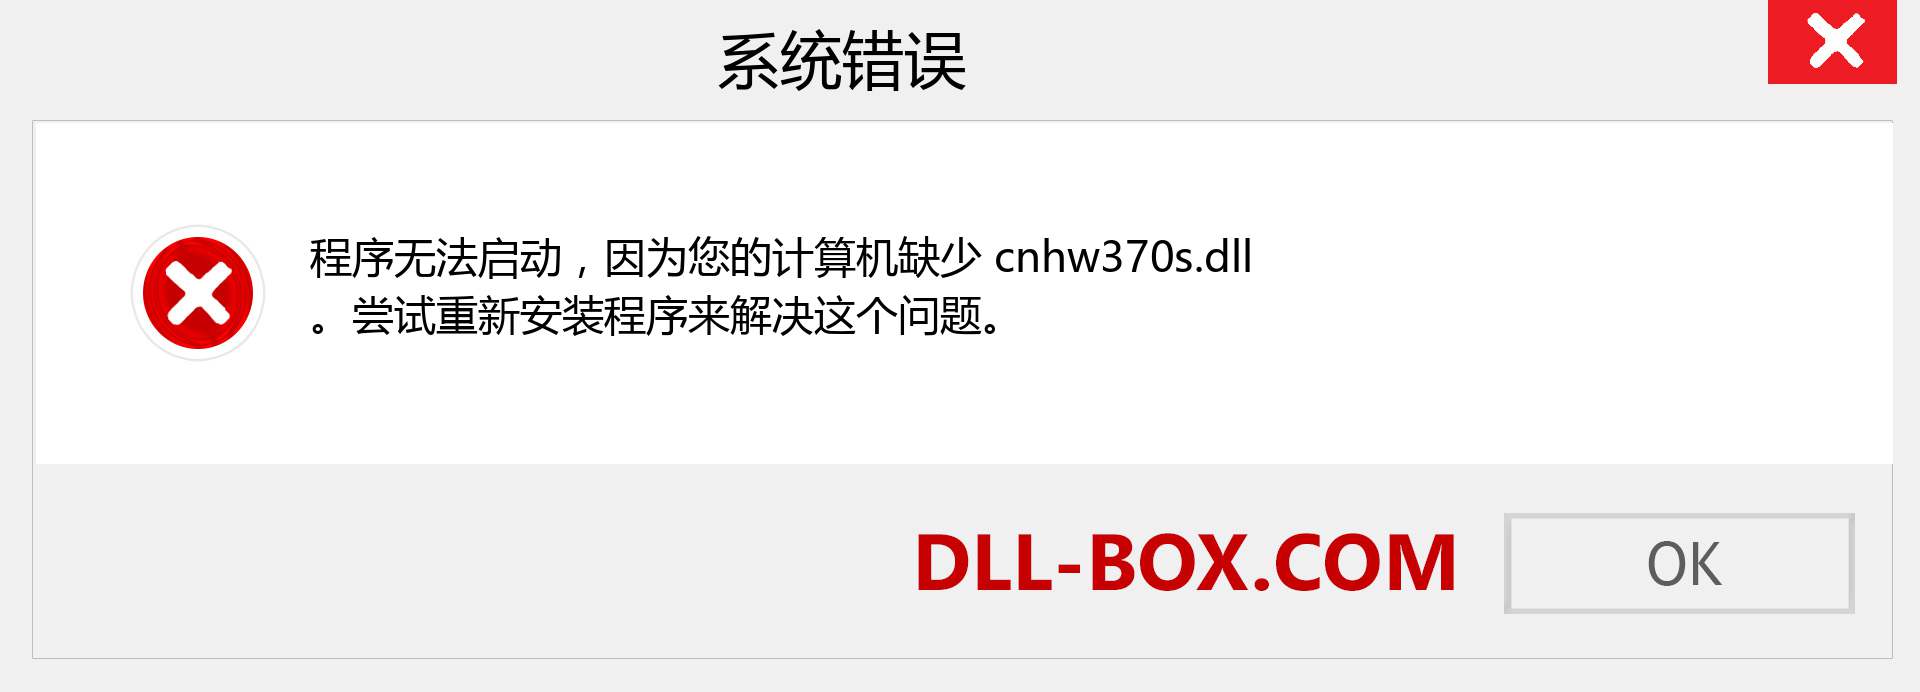 cnhw370s.dll 文件丢失？。 适用于 Windows 7、8、10 的下载 - 修复 Windows、照片、图像上的 cnhw370s dll 丢失错误